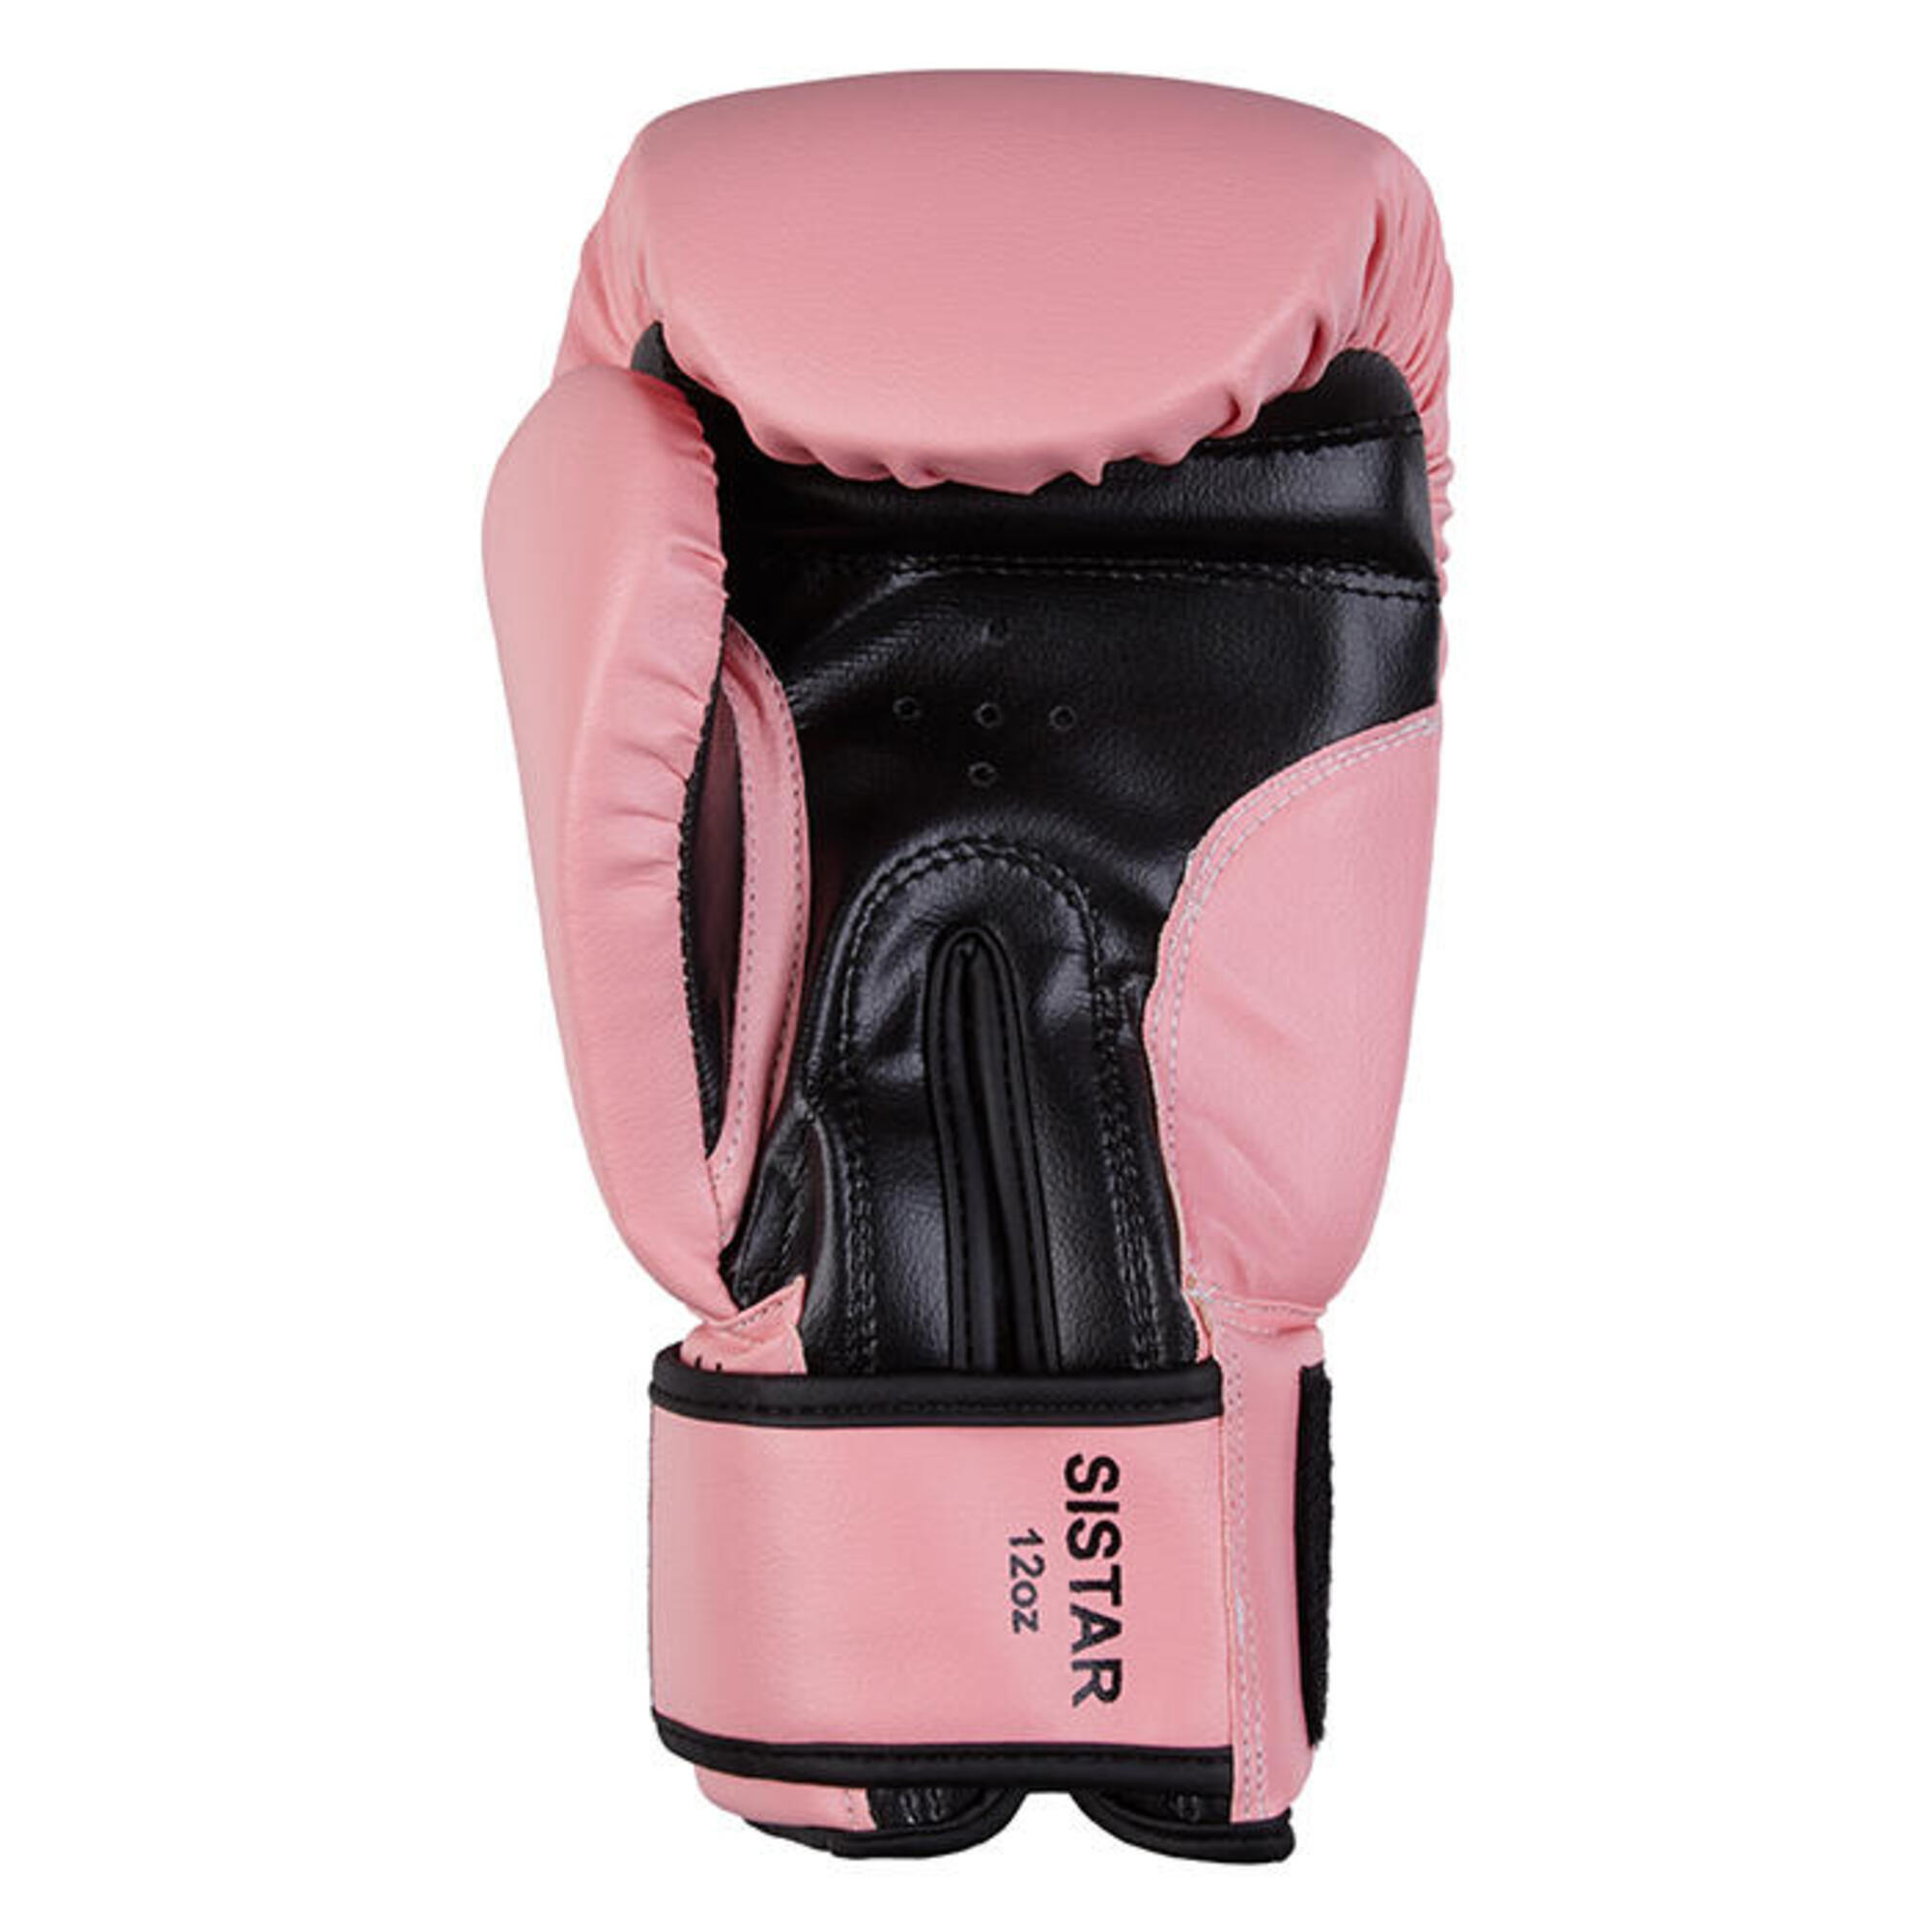 Боксерские перчатки Benlee Sistar 14 oz розовые, розовый перчатки боксерские boybo basic к з 8 oz цв синий